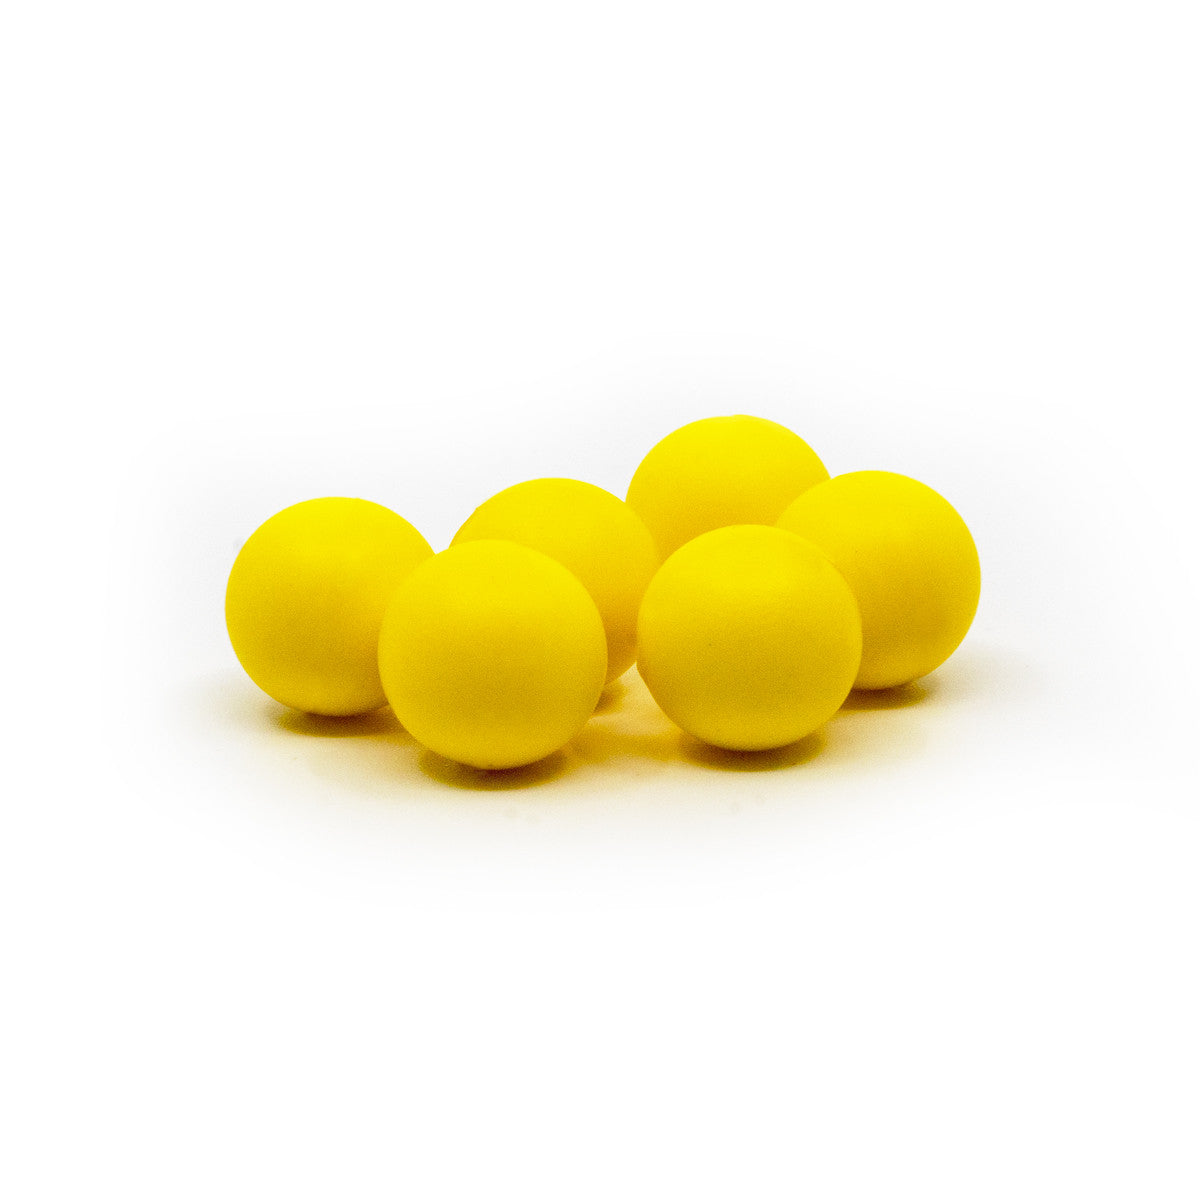 Valken Paintball Gotcha Reusable Soft Foam Paintballs 0.50 Cal - Neon Yellow - 500 Count